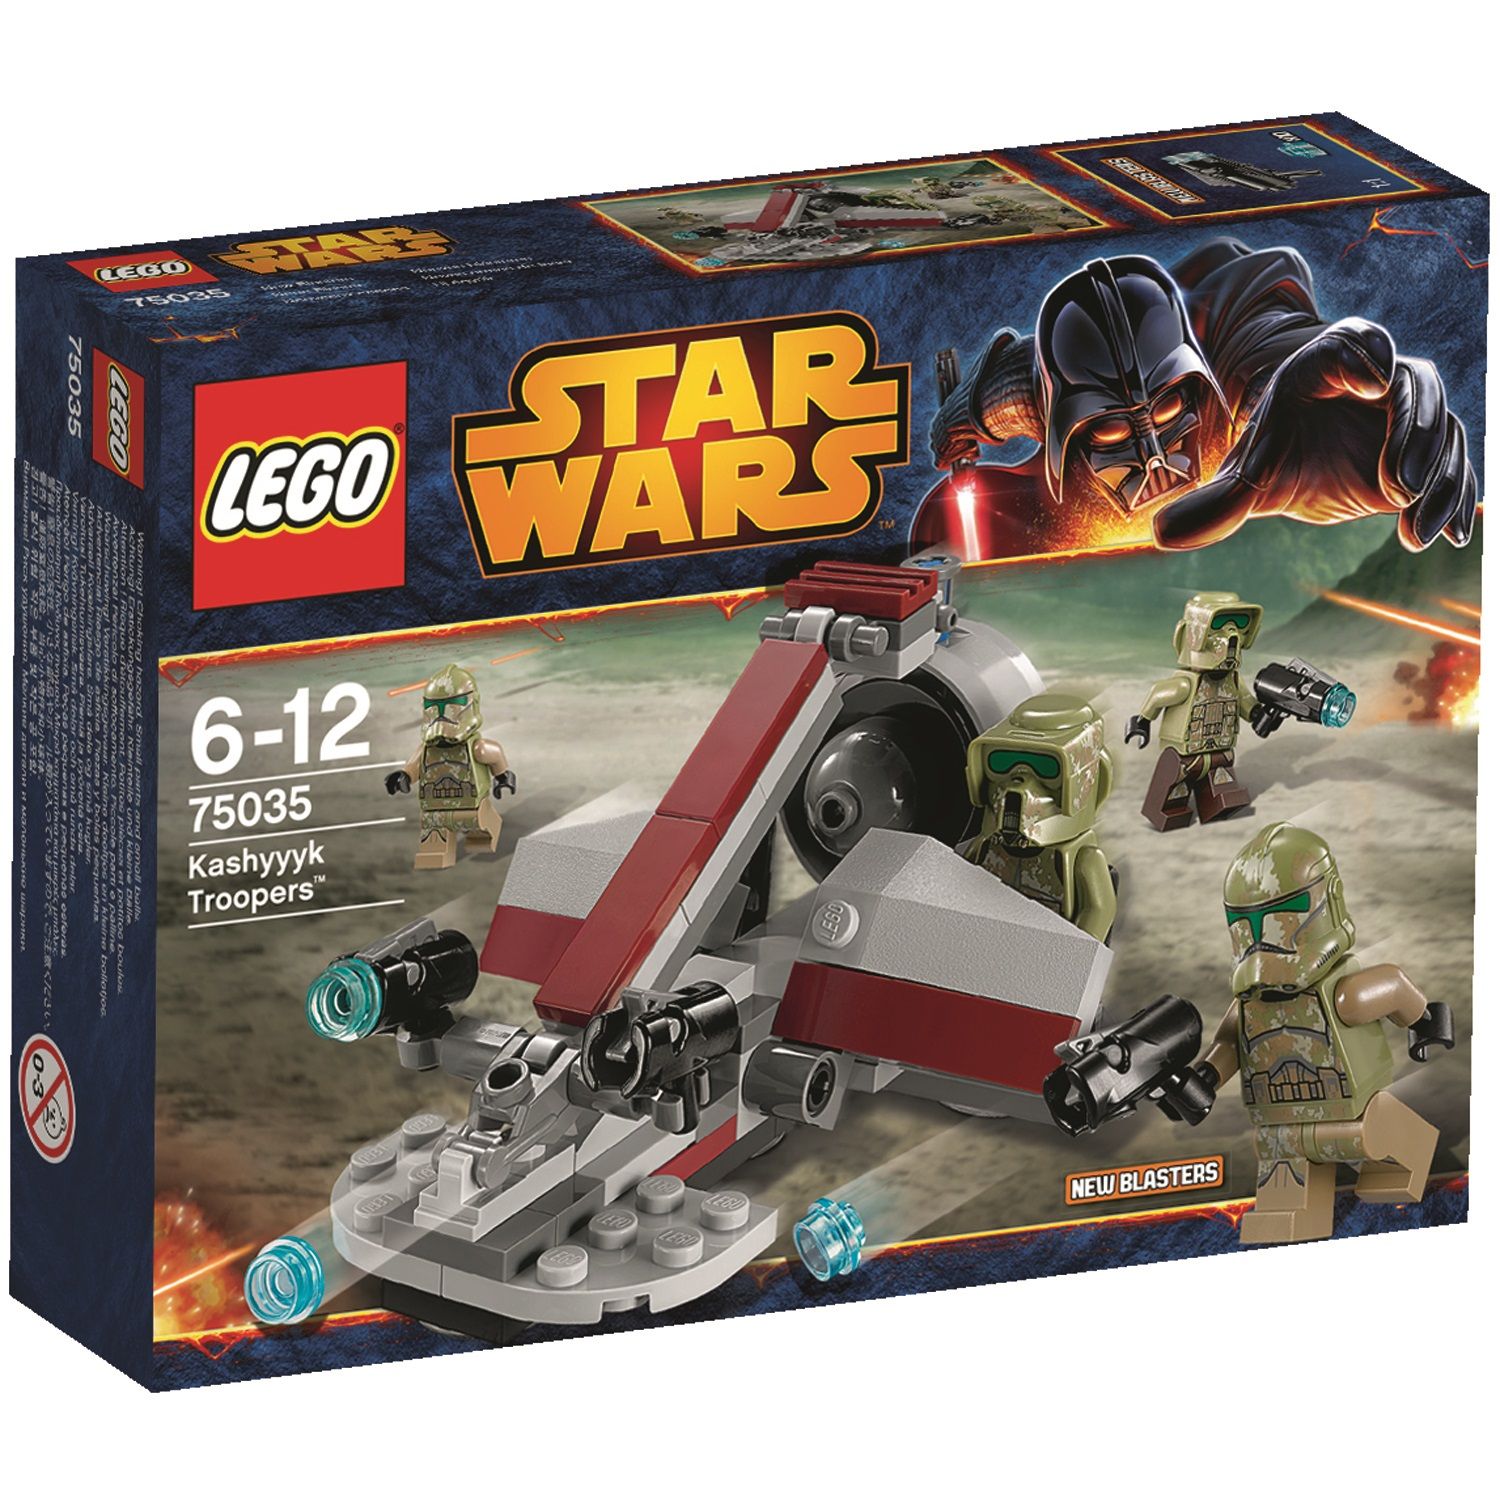  Set de constructie LEGO Star Wars - Kashyyk Troopers 75035 